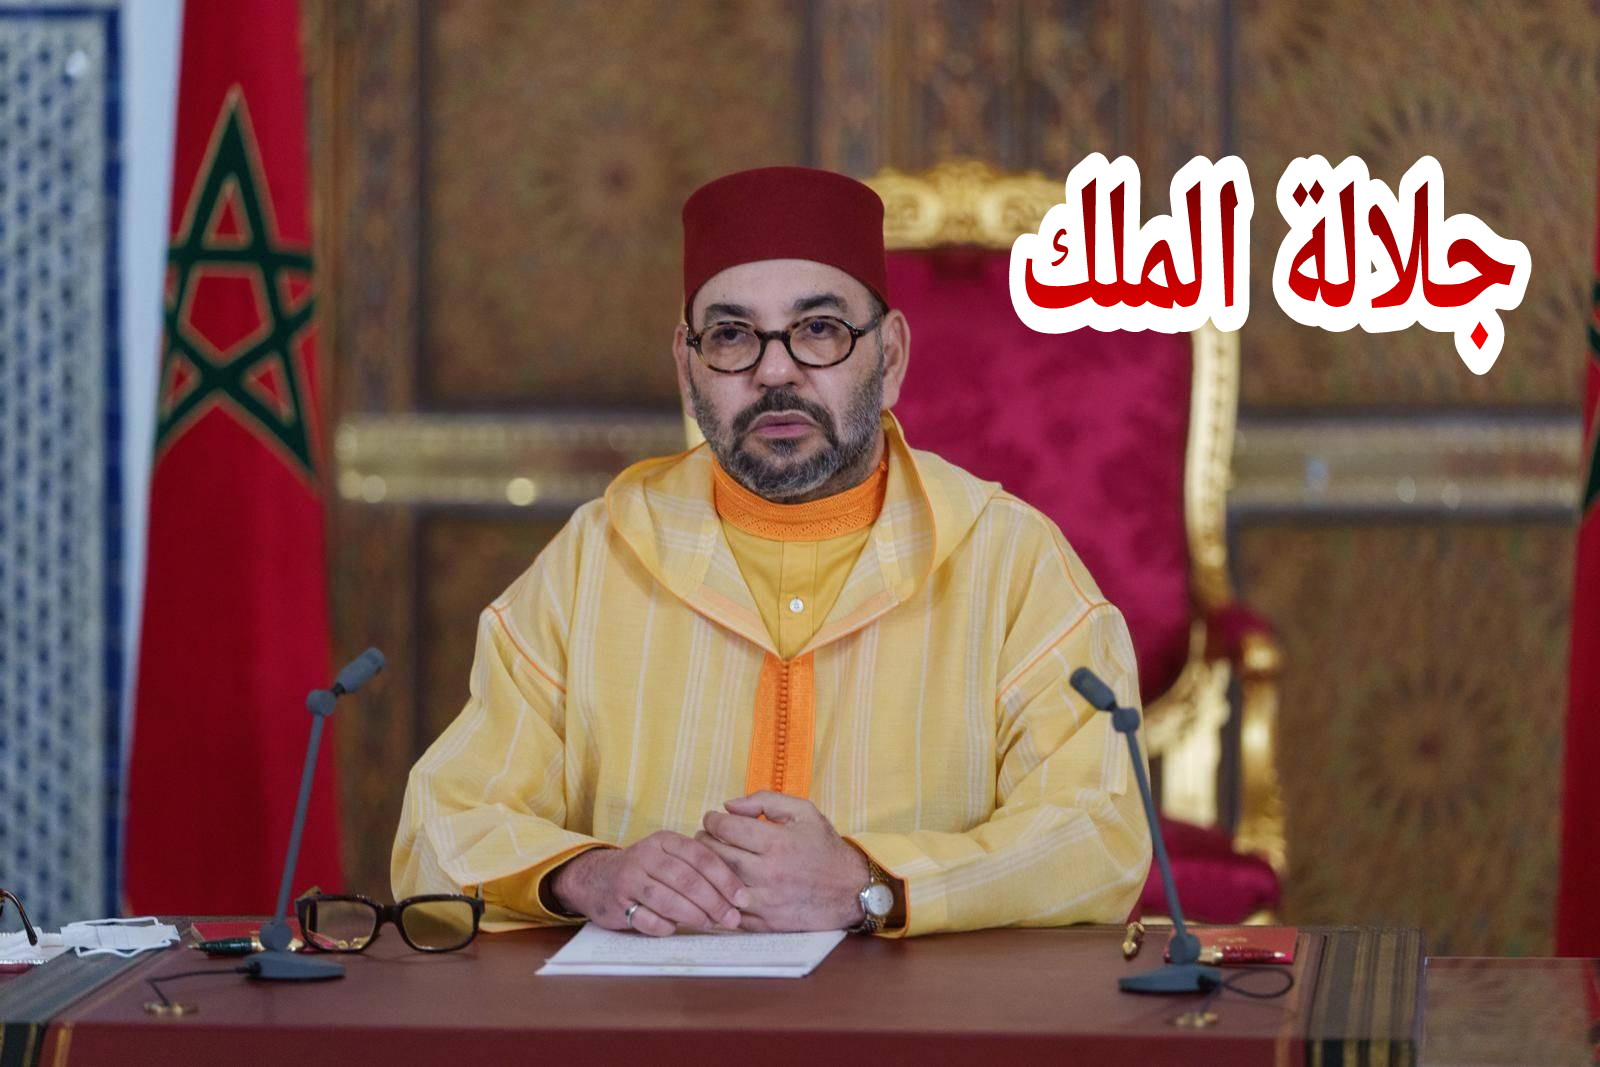 جلالة الملك محمد السادس يصدر عفوه السامي على 653 شخصا صادرة في حقهم عقوبات من طرف محاكم المغرب بينهم 464 في حالة اعتقال و16 من المتابعين بالار.هاب